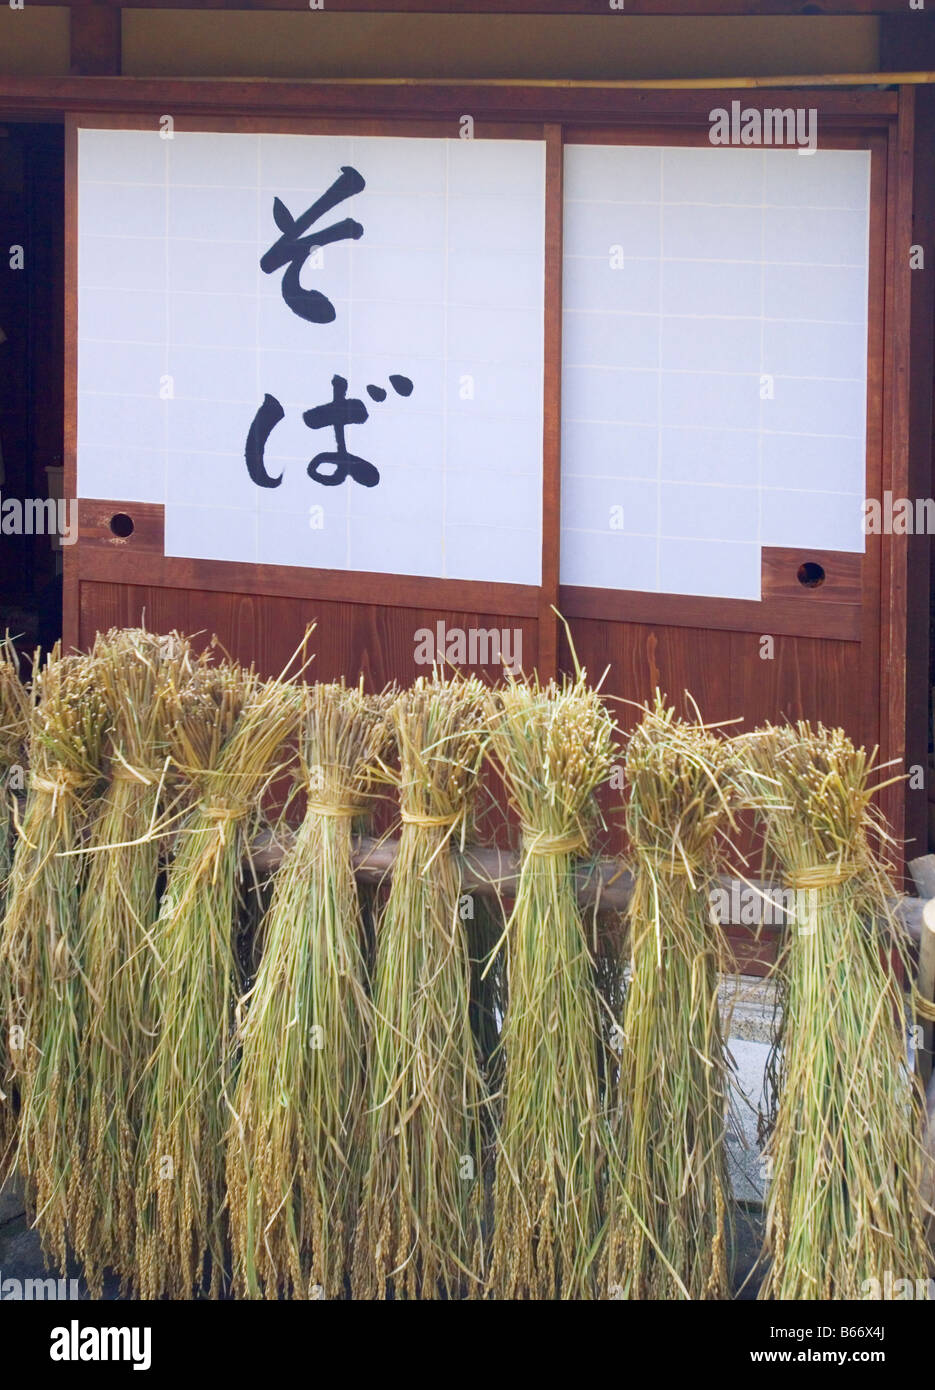 Bottes de foin Séchage par Shoji, signe de nouilles soba sur la fenêtre Banque D'Images